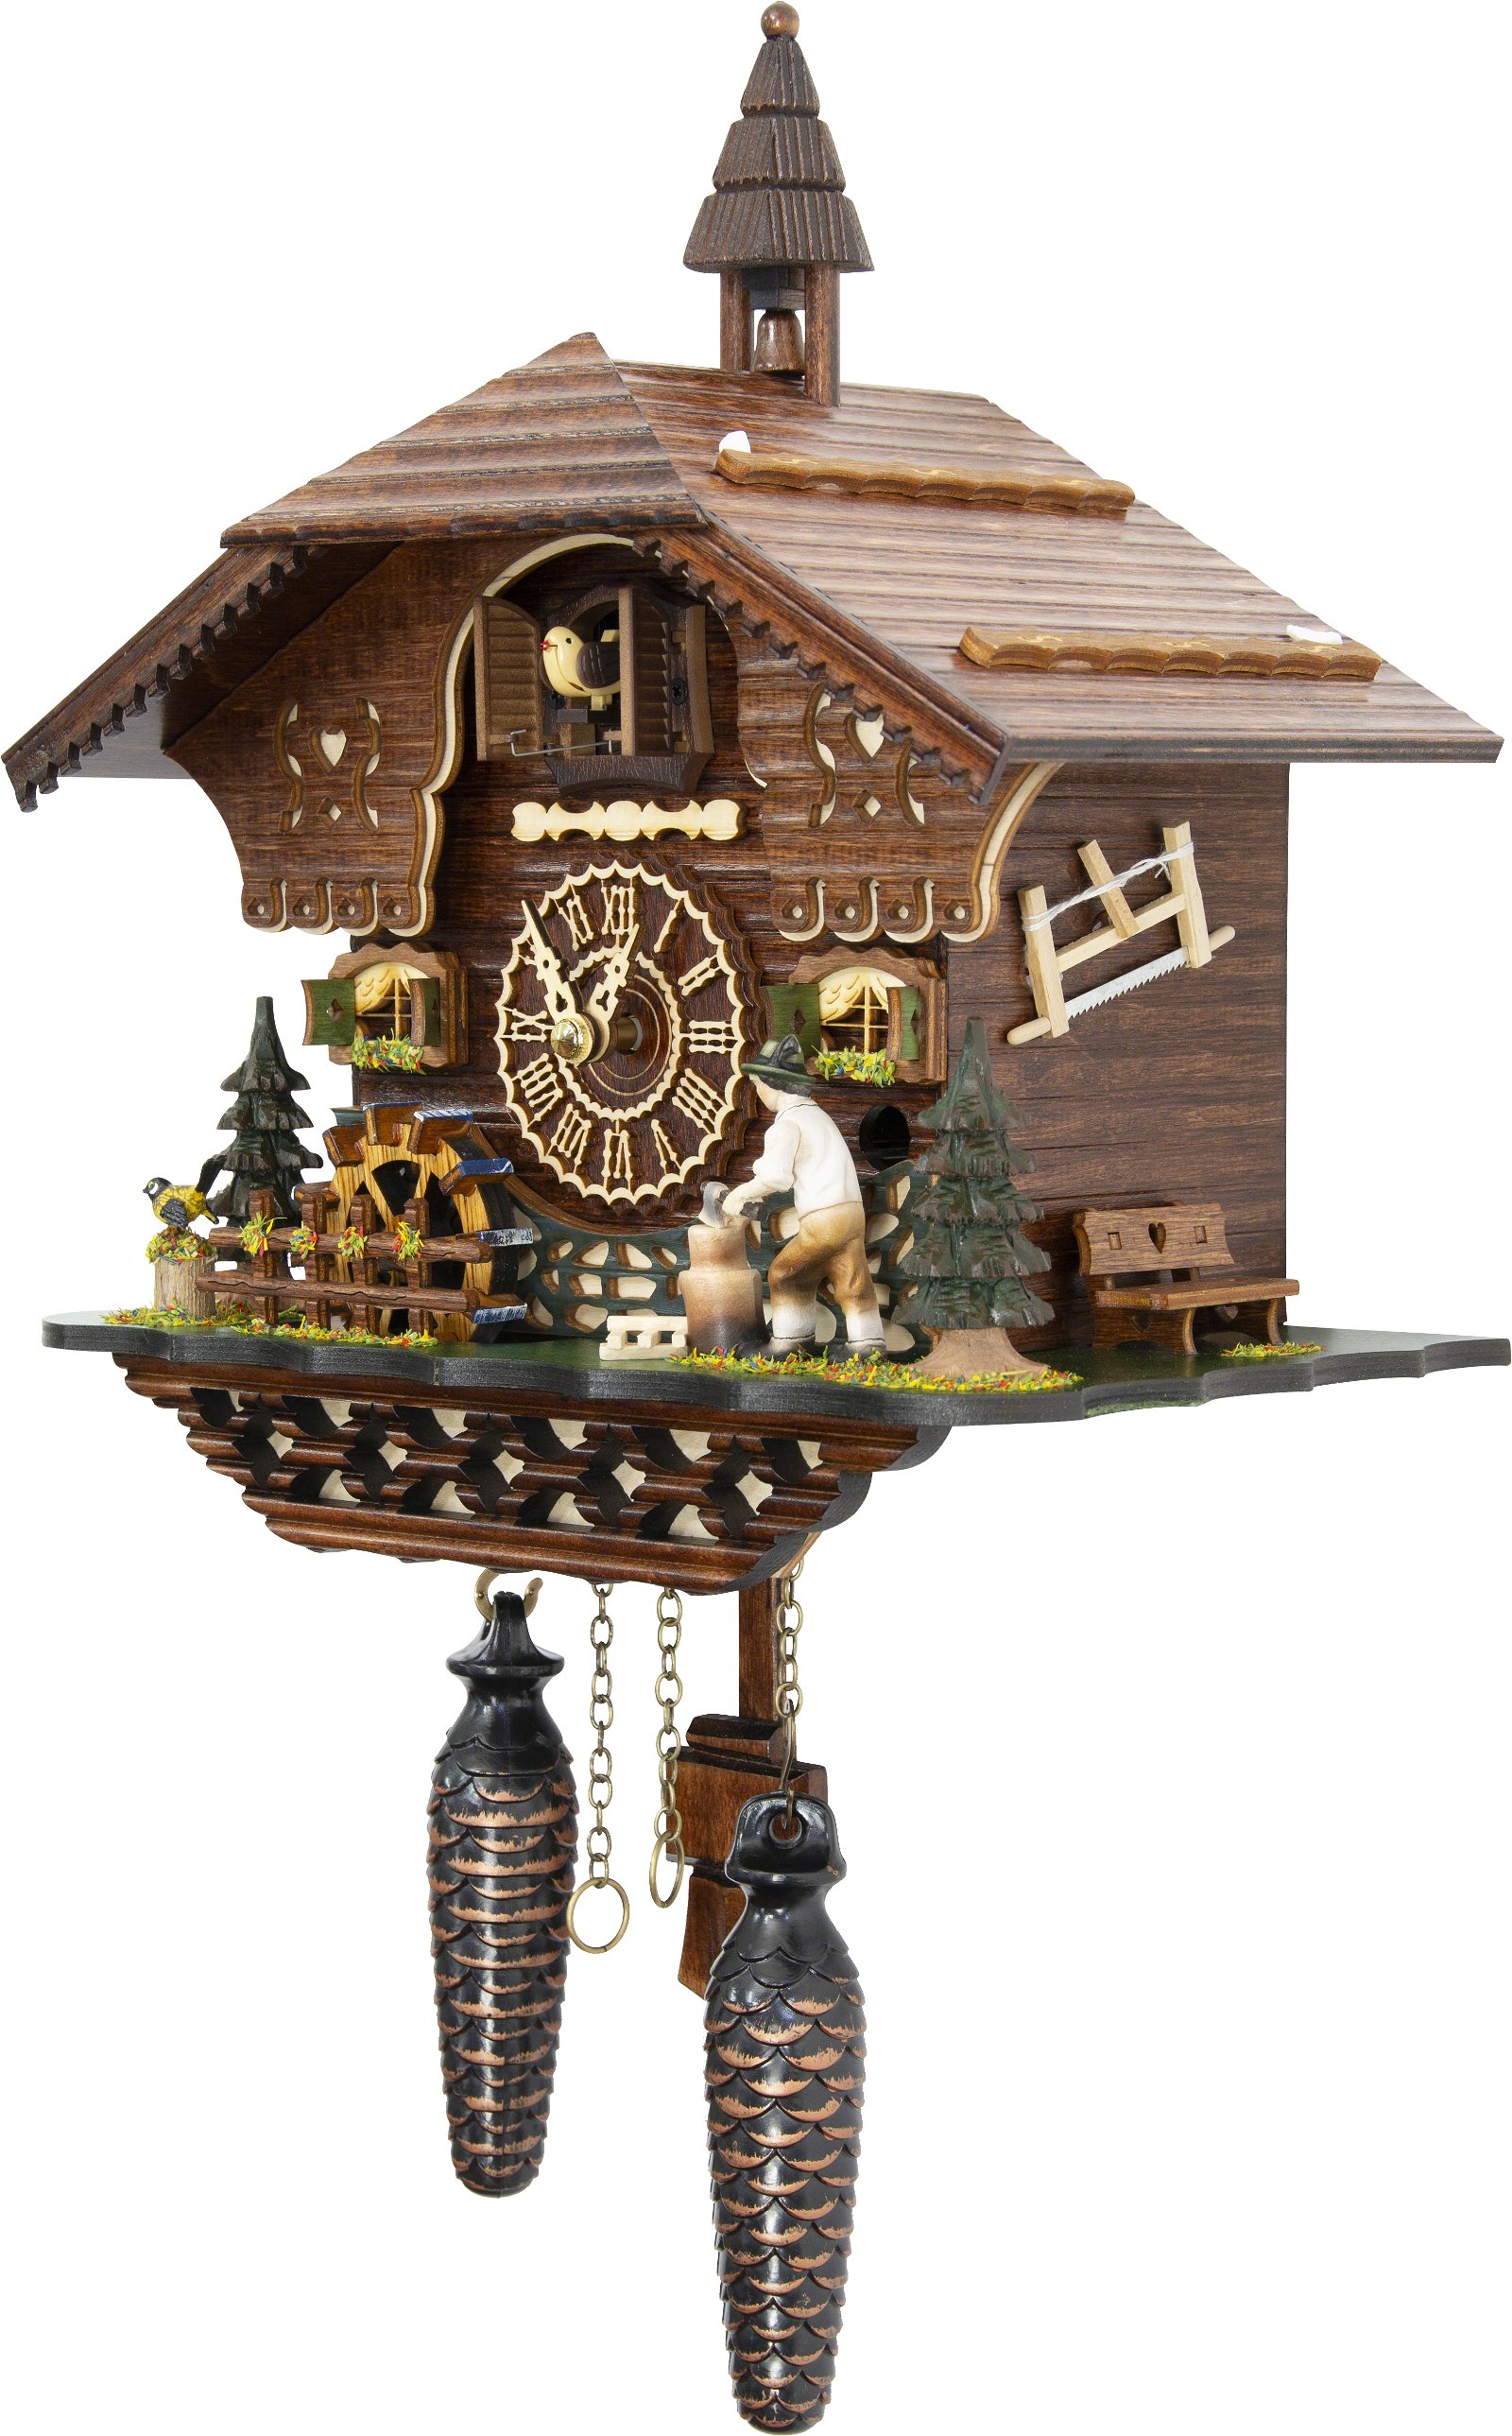 Kuckucksuhr Chalet-Stil Quarz-Uhrwerk 30cm von Trenkle Uhren